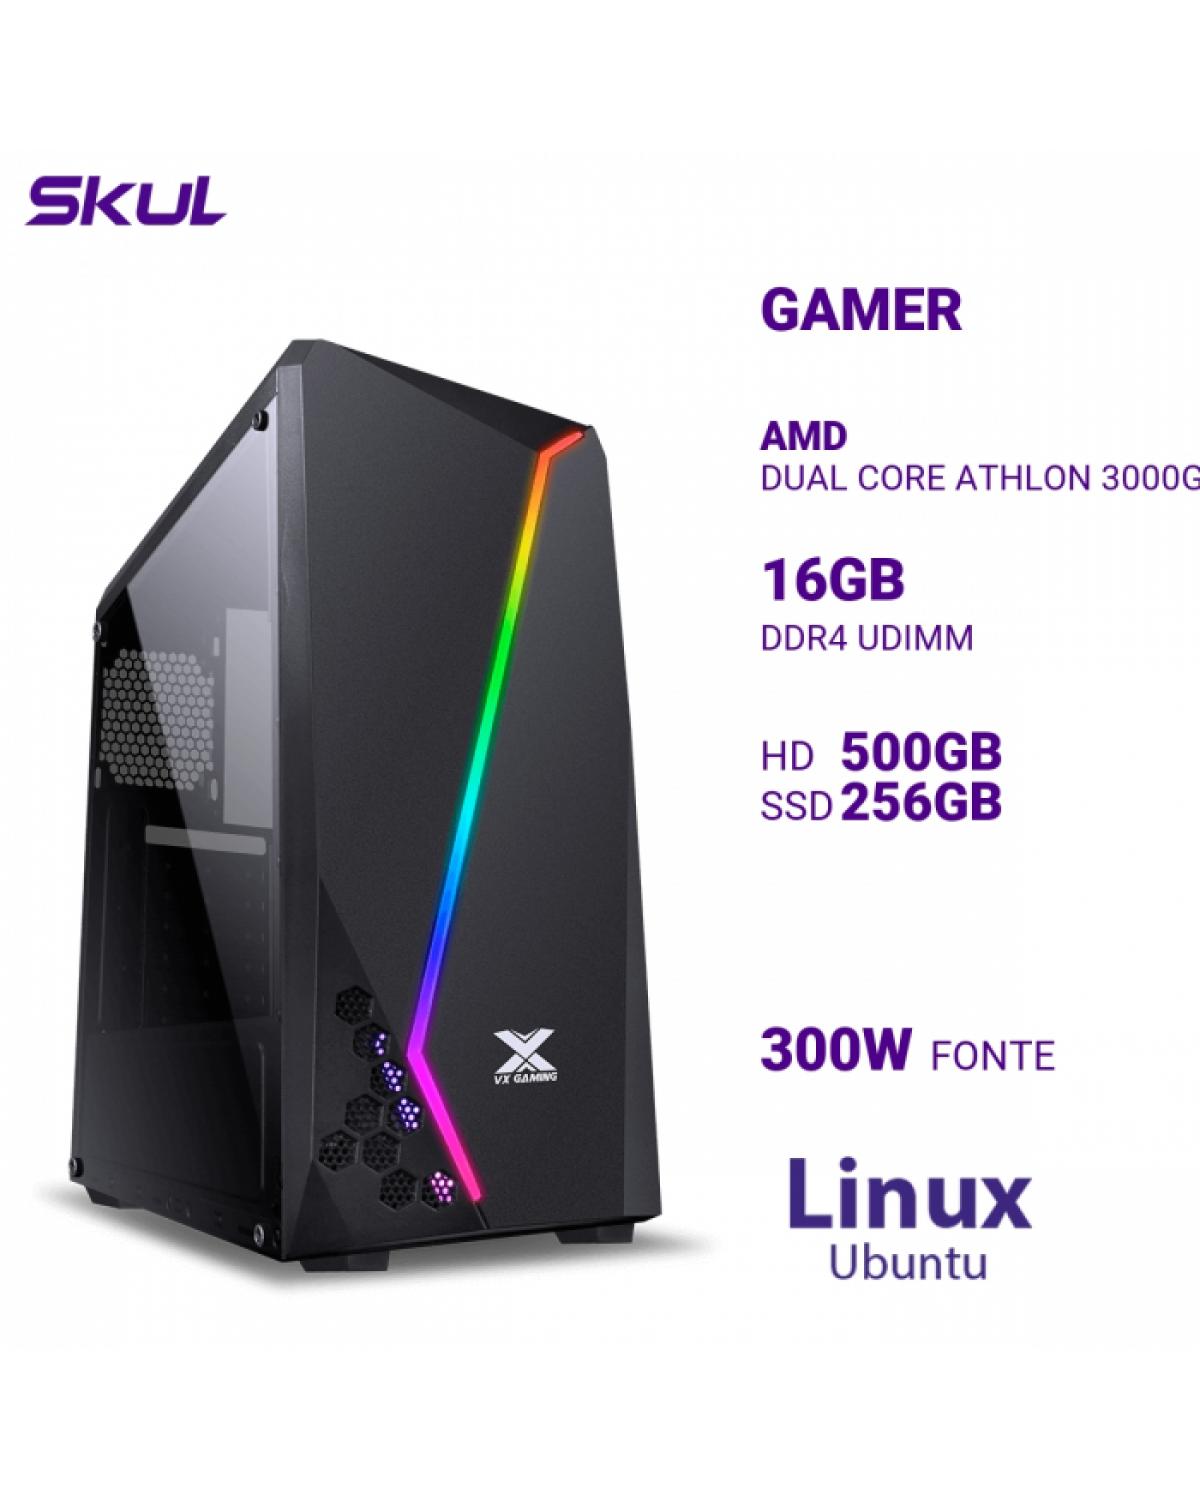 COMPUTADOR GAMER 1000 DUAL CORE ATHLON 3000G 3.50GHZ MEM 16GB DDR4 HD 500GB SSD 256GB FONTE 300W LINUX